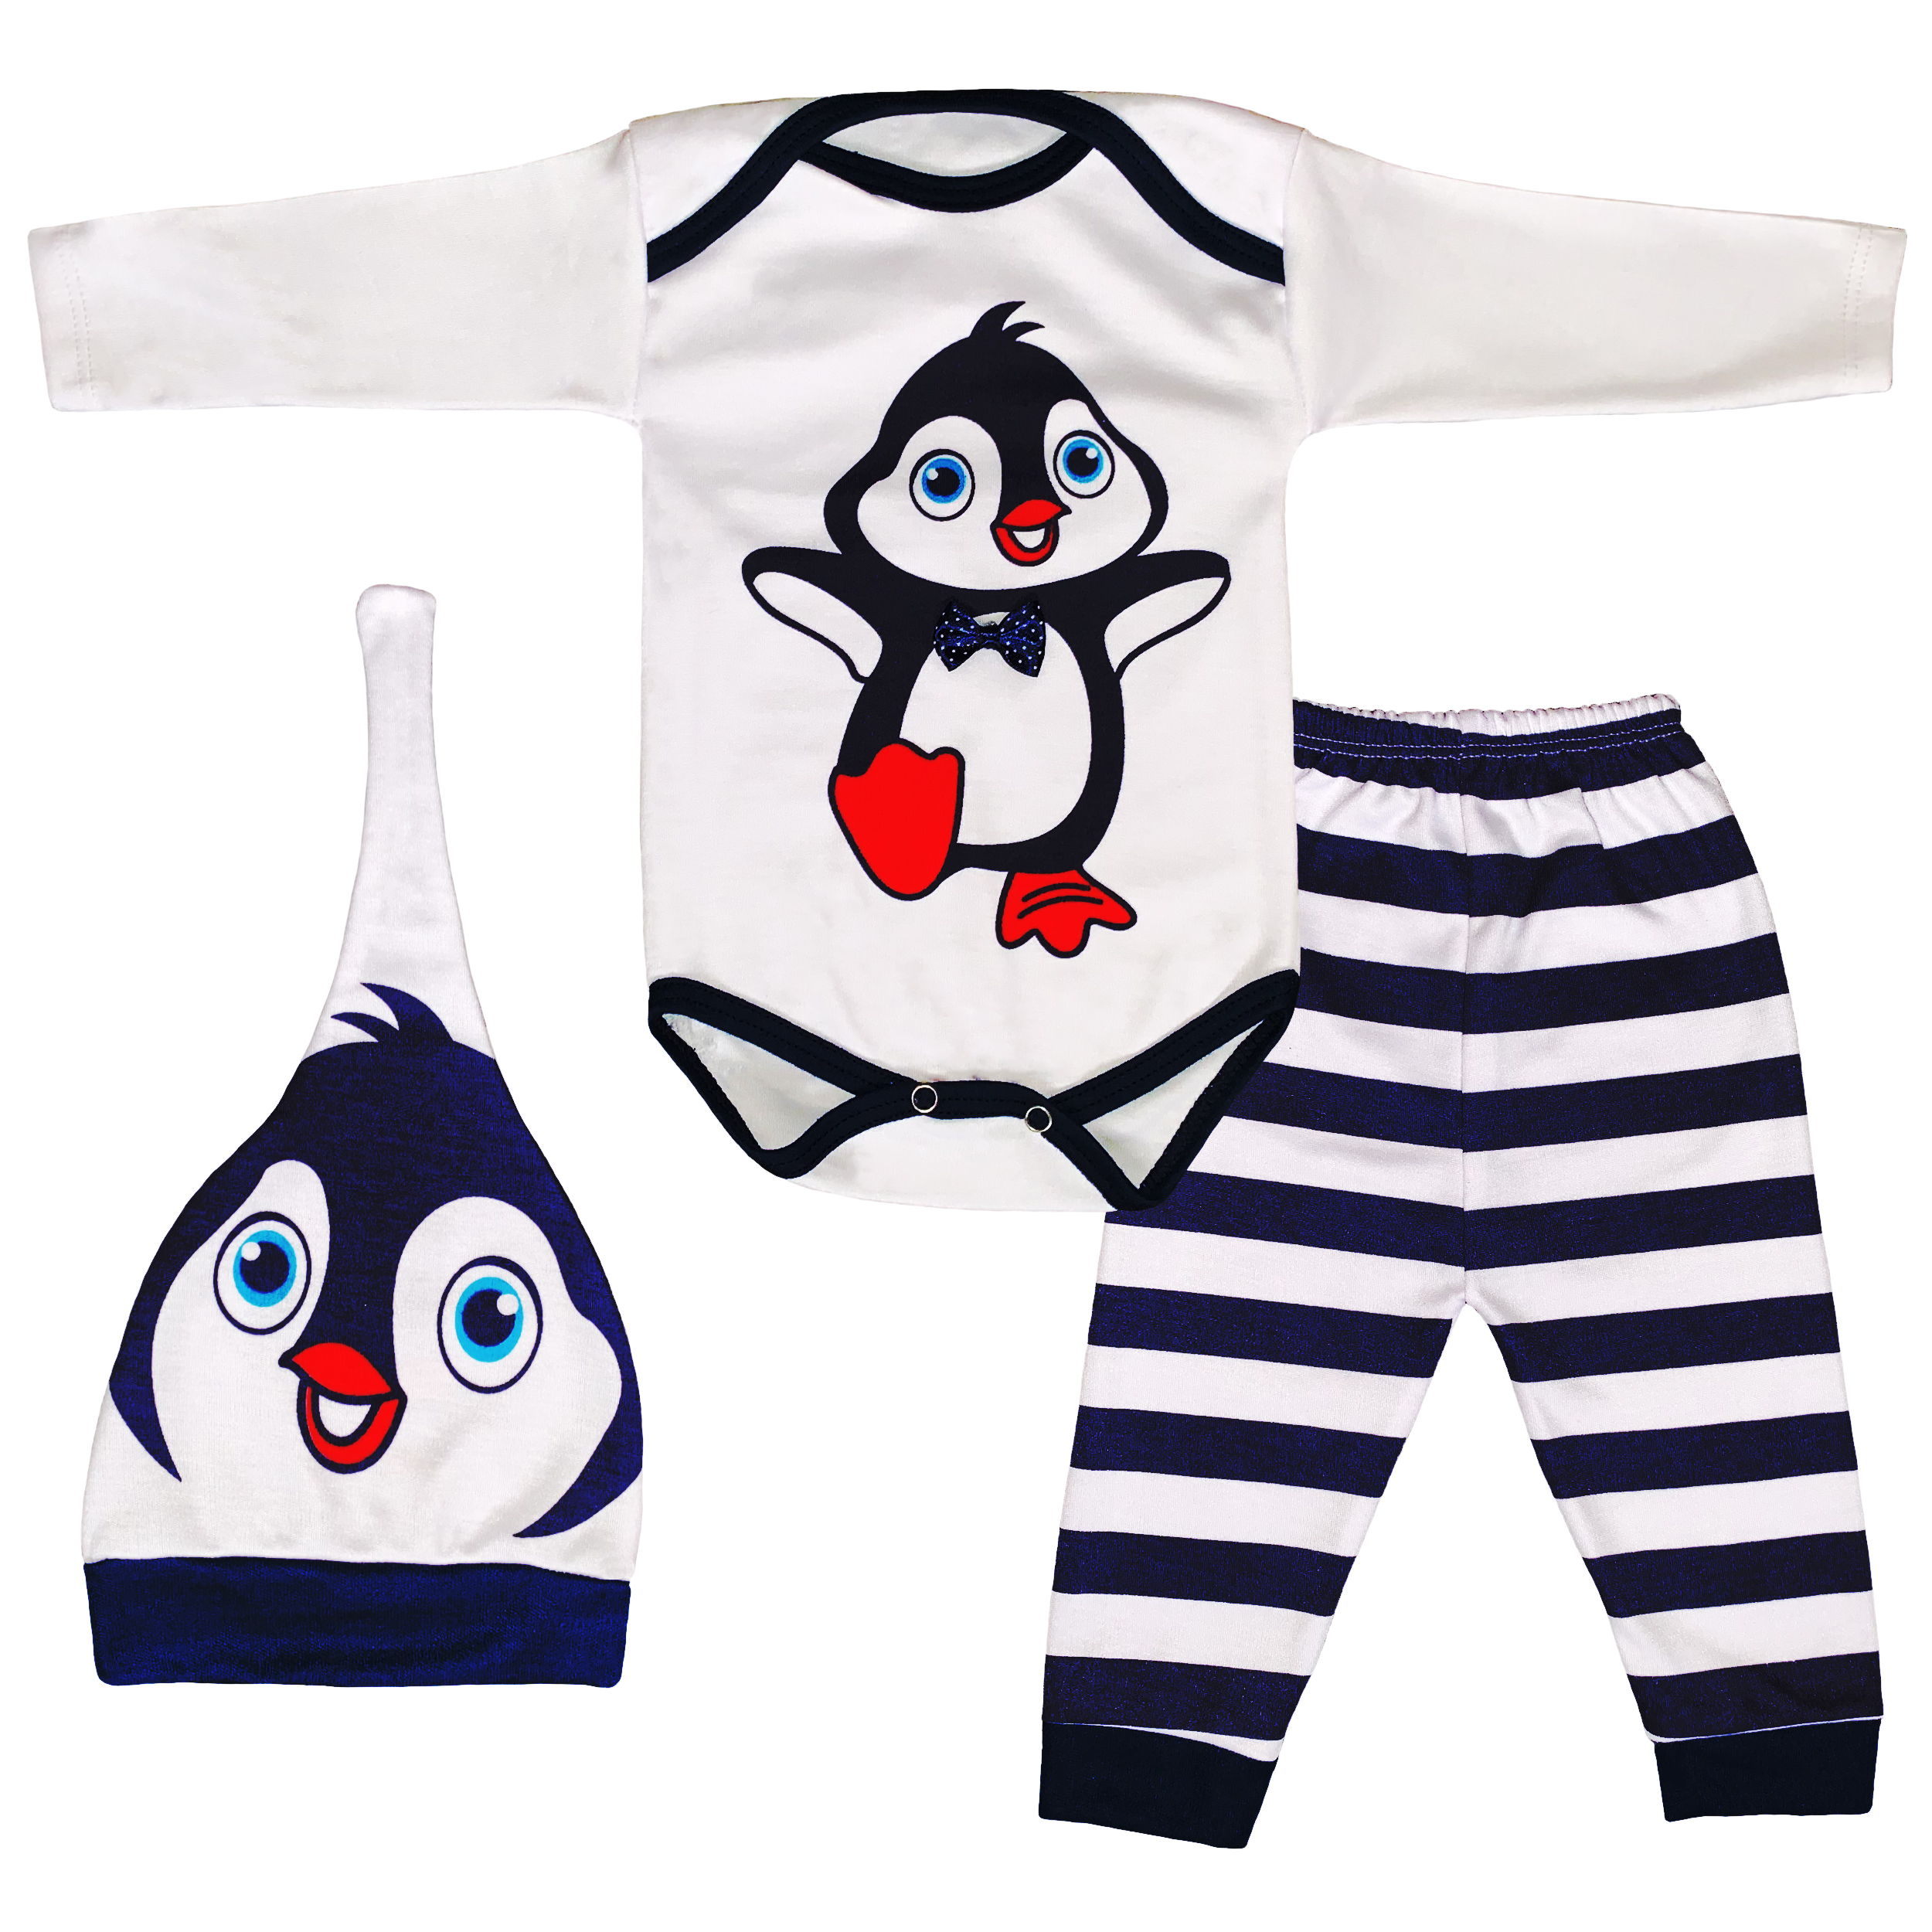 نقد و بررسی ست 3 تکه لباس نوزادی طرح پنگوین کوچولو کد FF-136 توسط خریداران